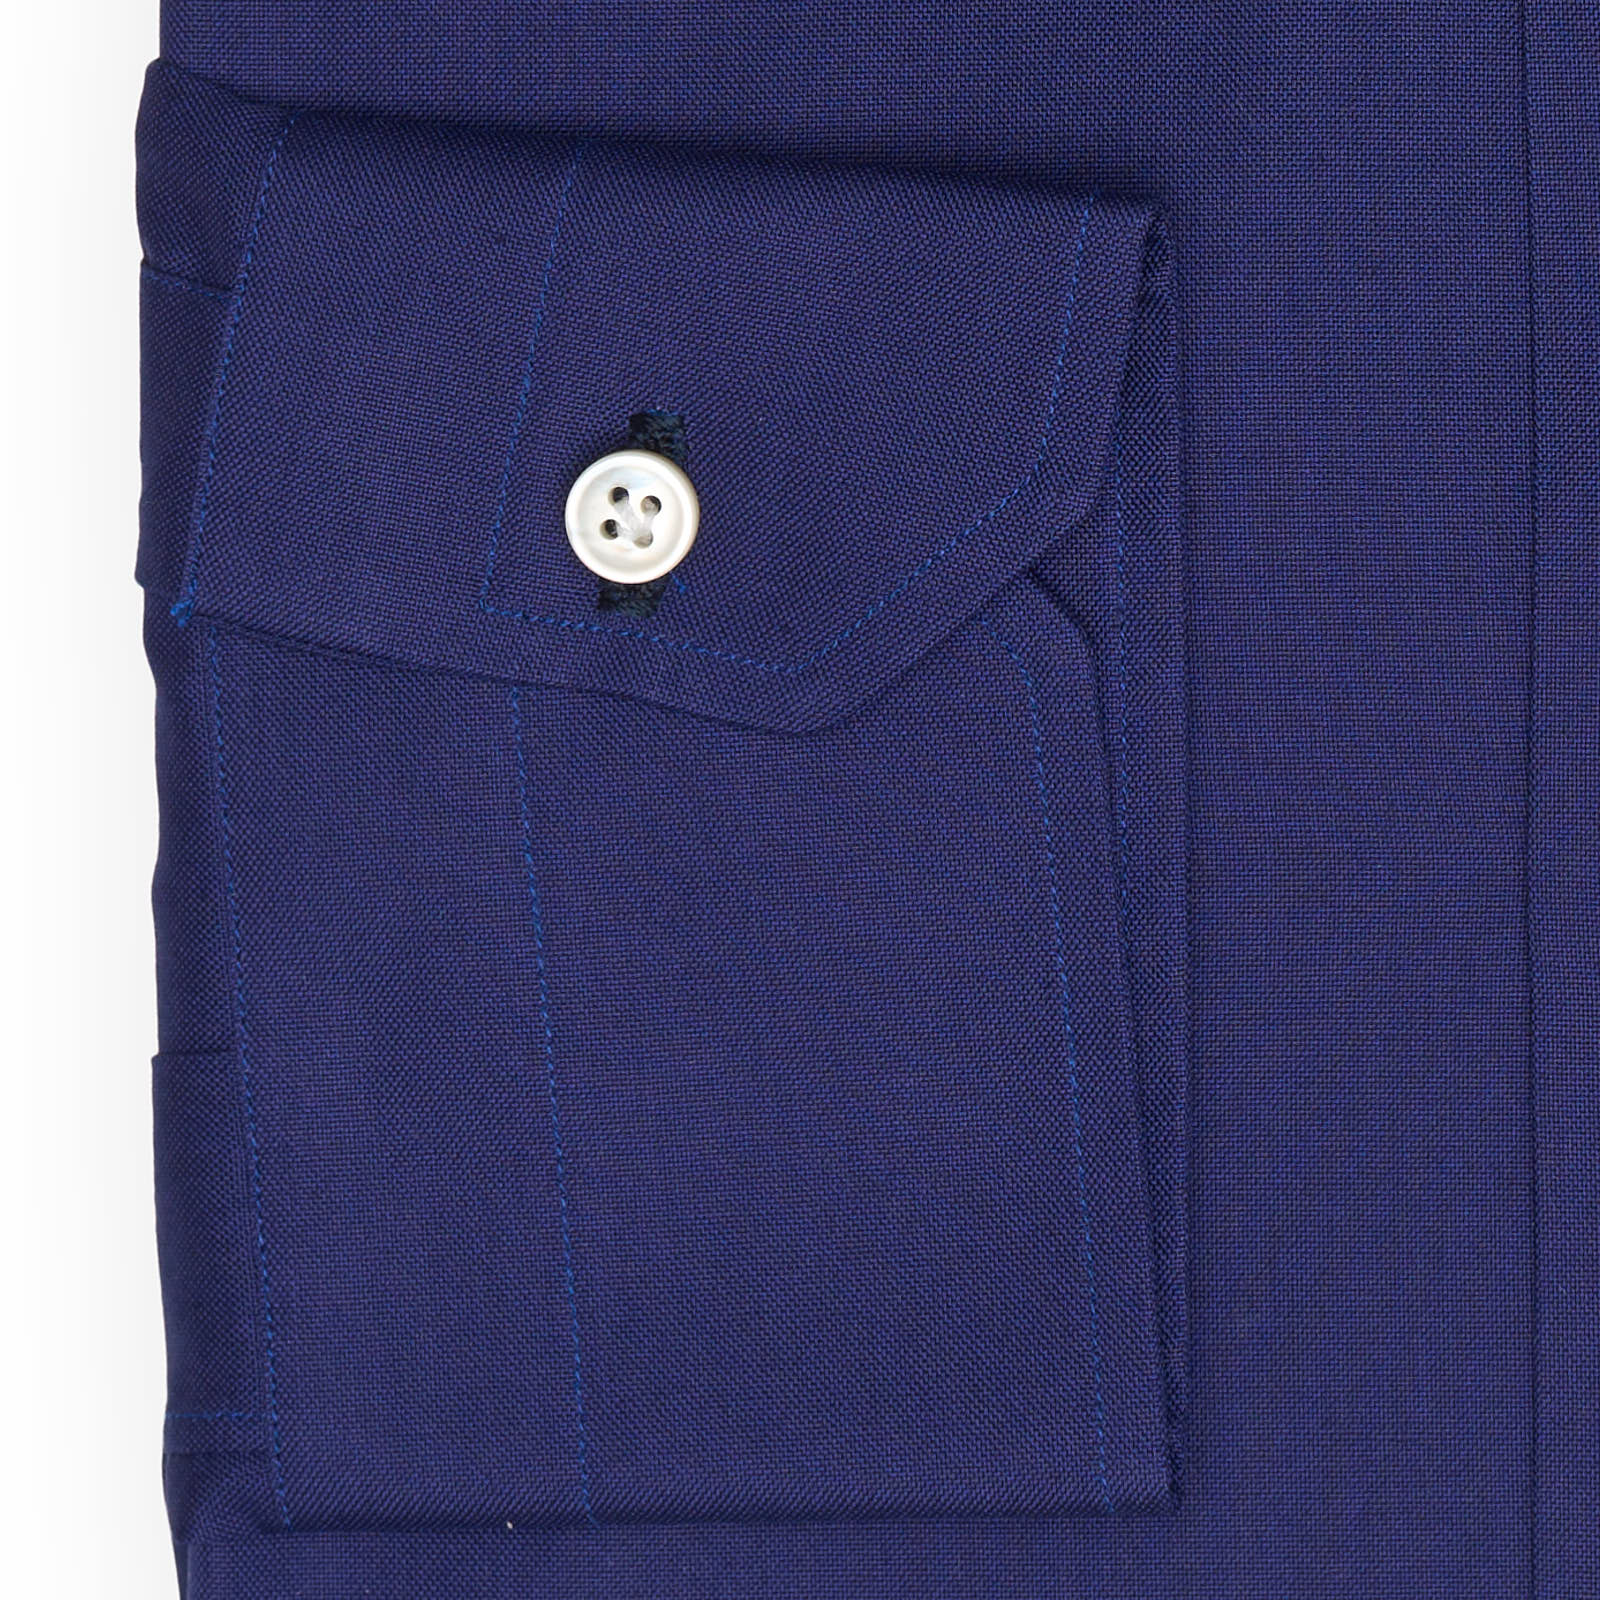 MATTABISCH for VANNUCCI Royal Blue Cotton Dress Shirt EU 39 NEW US 15.5